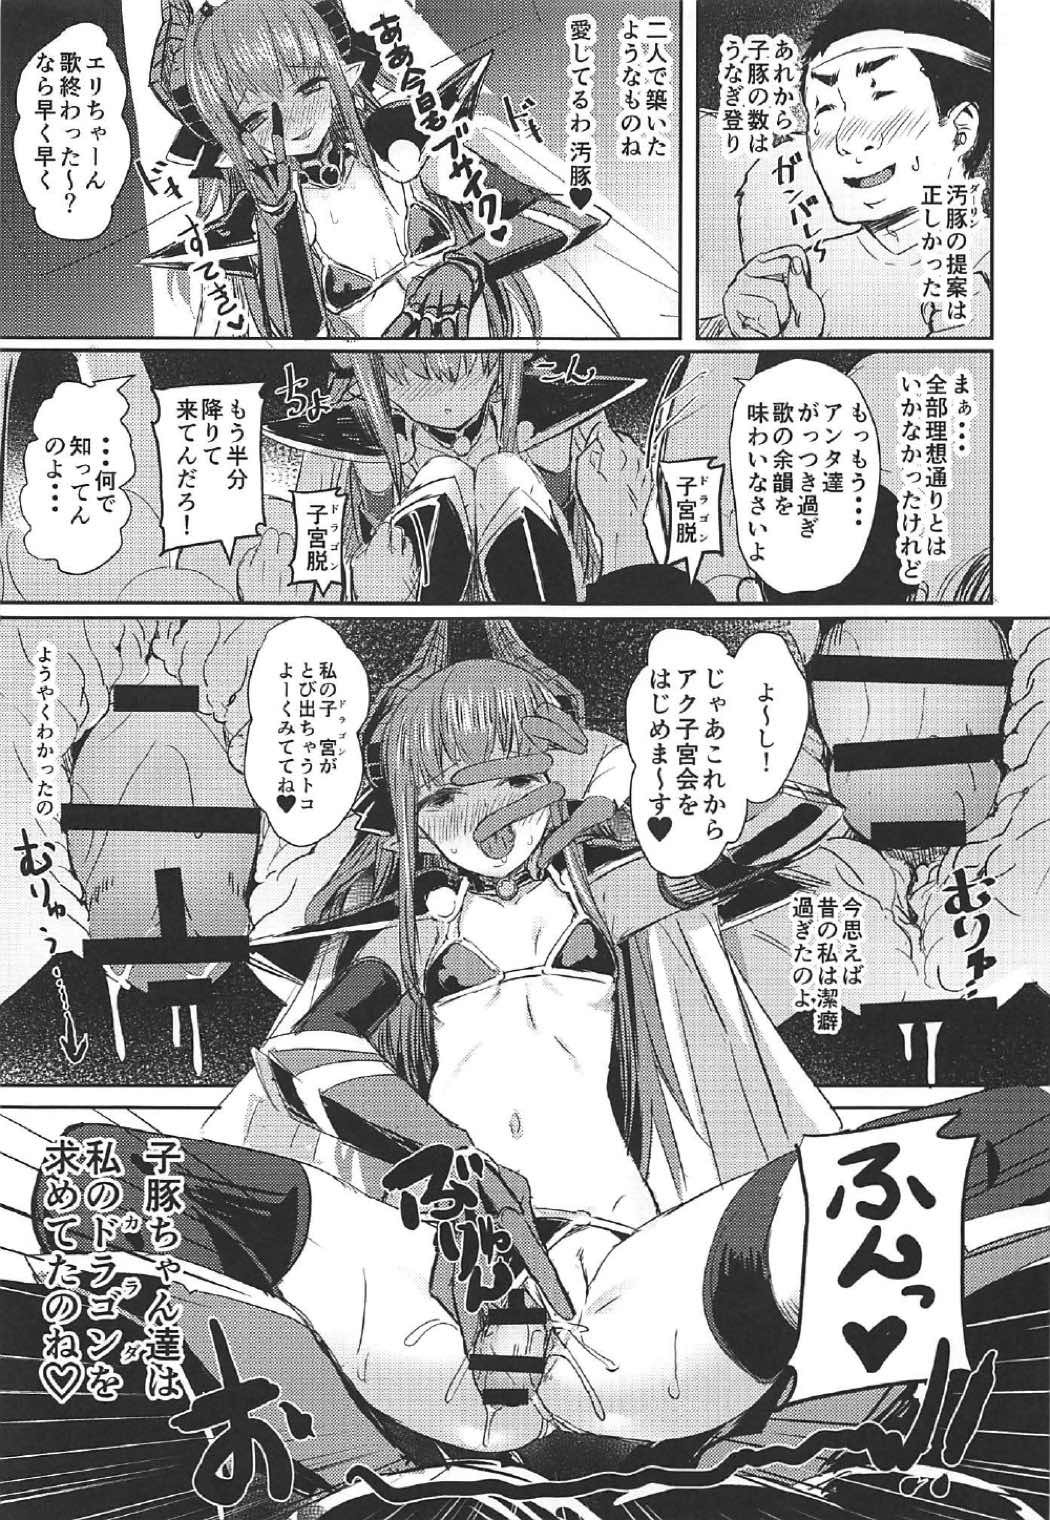 (C92) [kanemasita (かねた)] ドラゴンアイドルエリちゃんのアク子宮会場はこちら + C92 おまけ本 (Fate/Grand Order, 艦隊これくしょん -艦これ-)